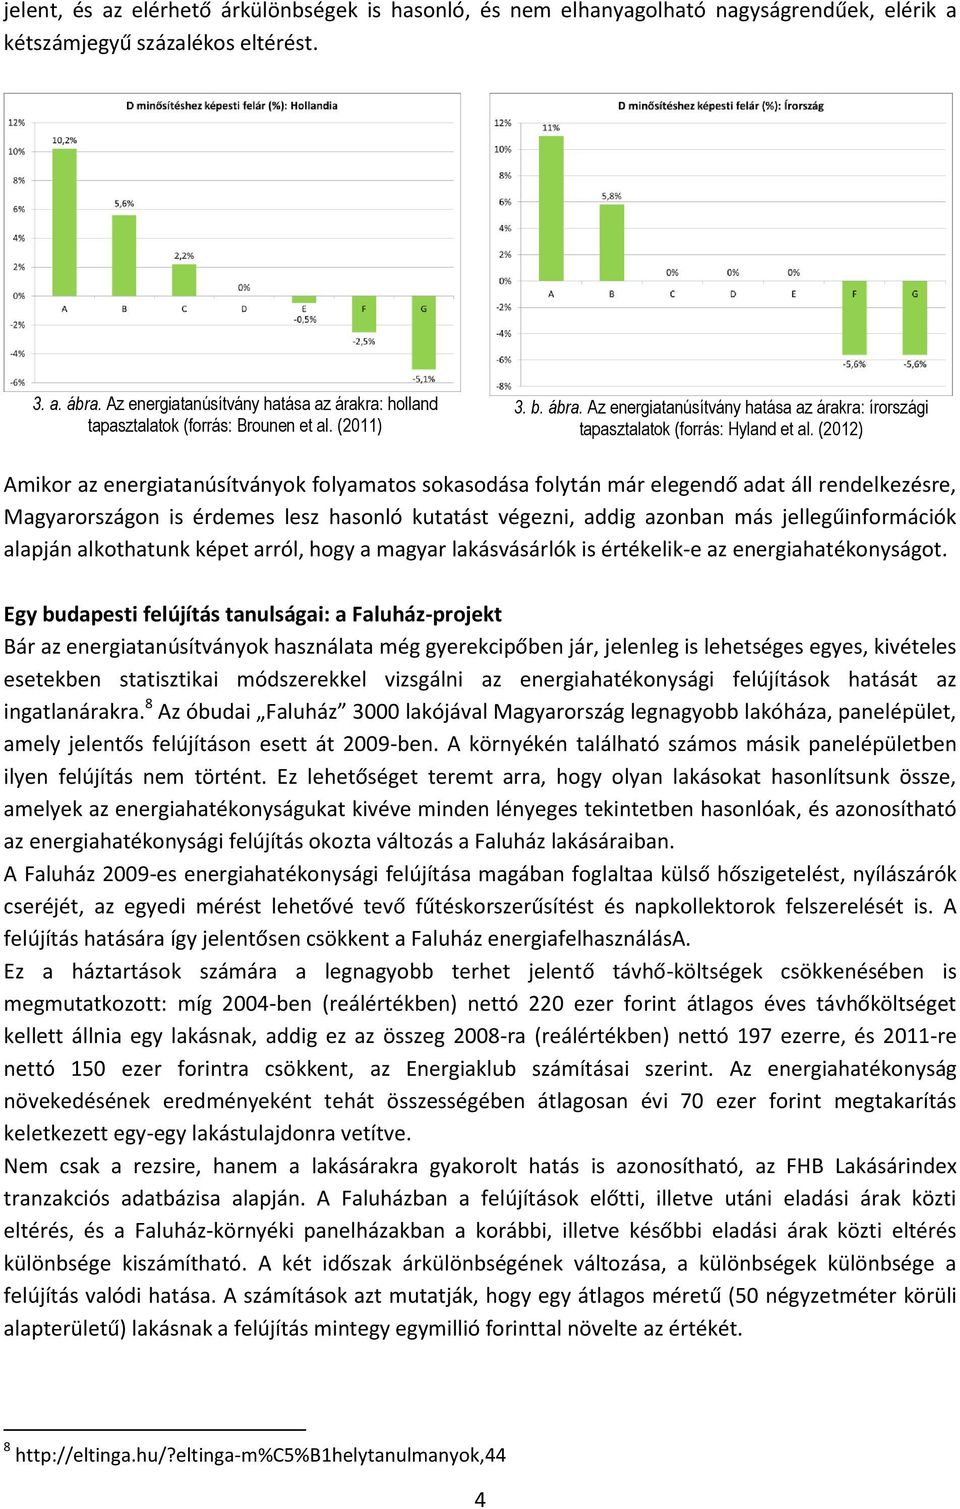 (2012) Amikor az energiatanúsítványok folyamatos sokasodása folytán már elegendő adat áll rendelkezésre, Magyarországon is érdemes lesz hasonló kutatást végezni, addig azonban más jellegűinformációk